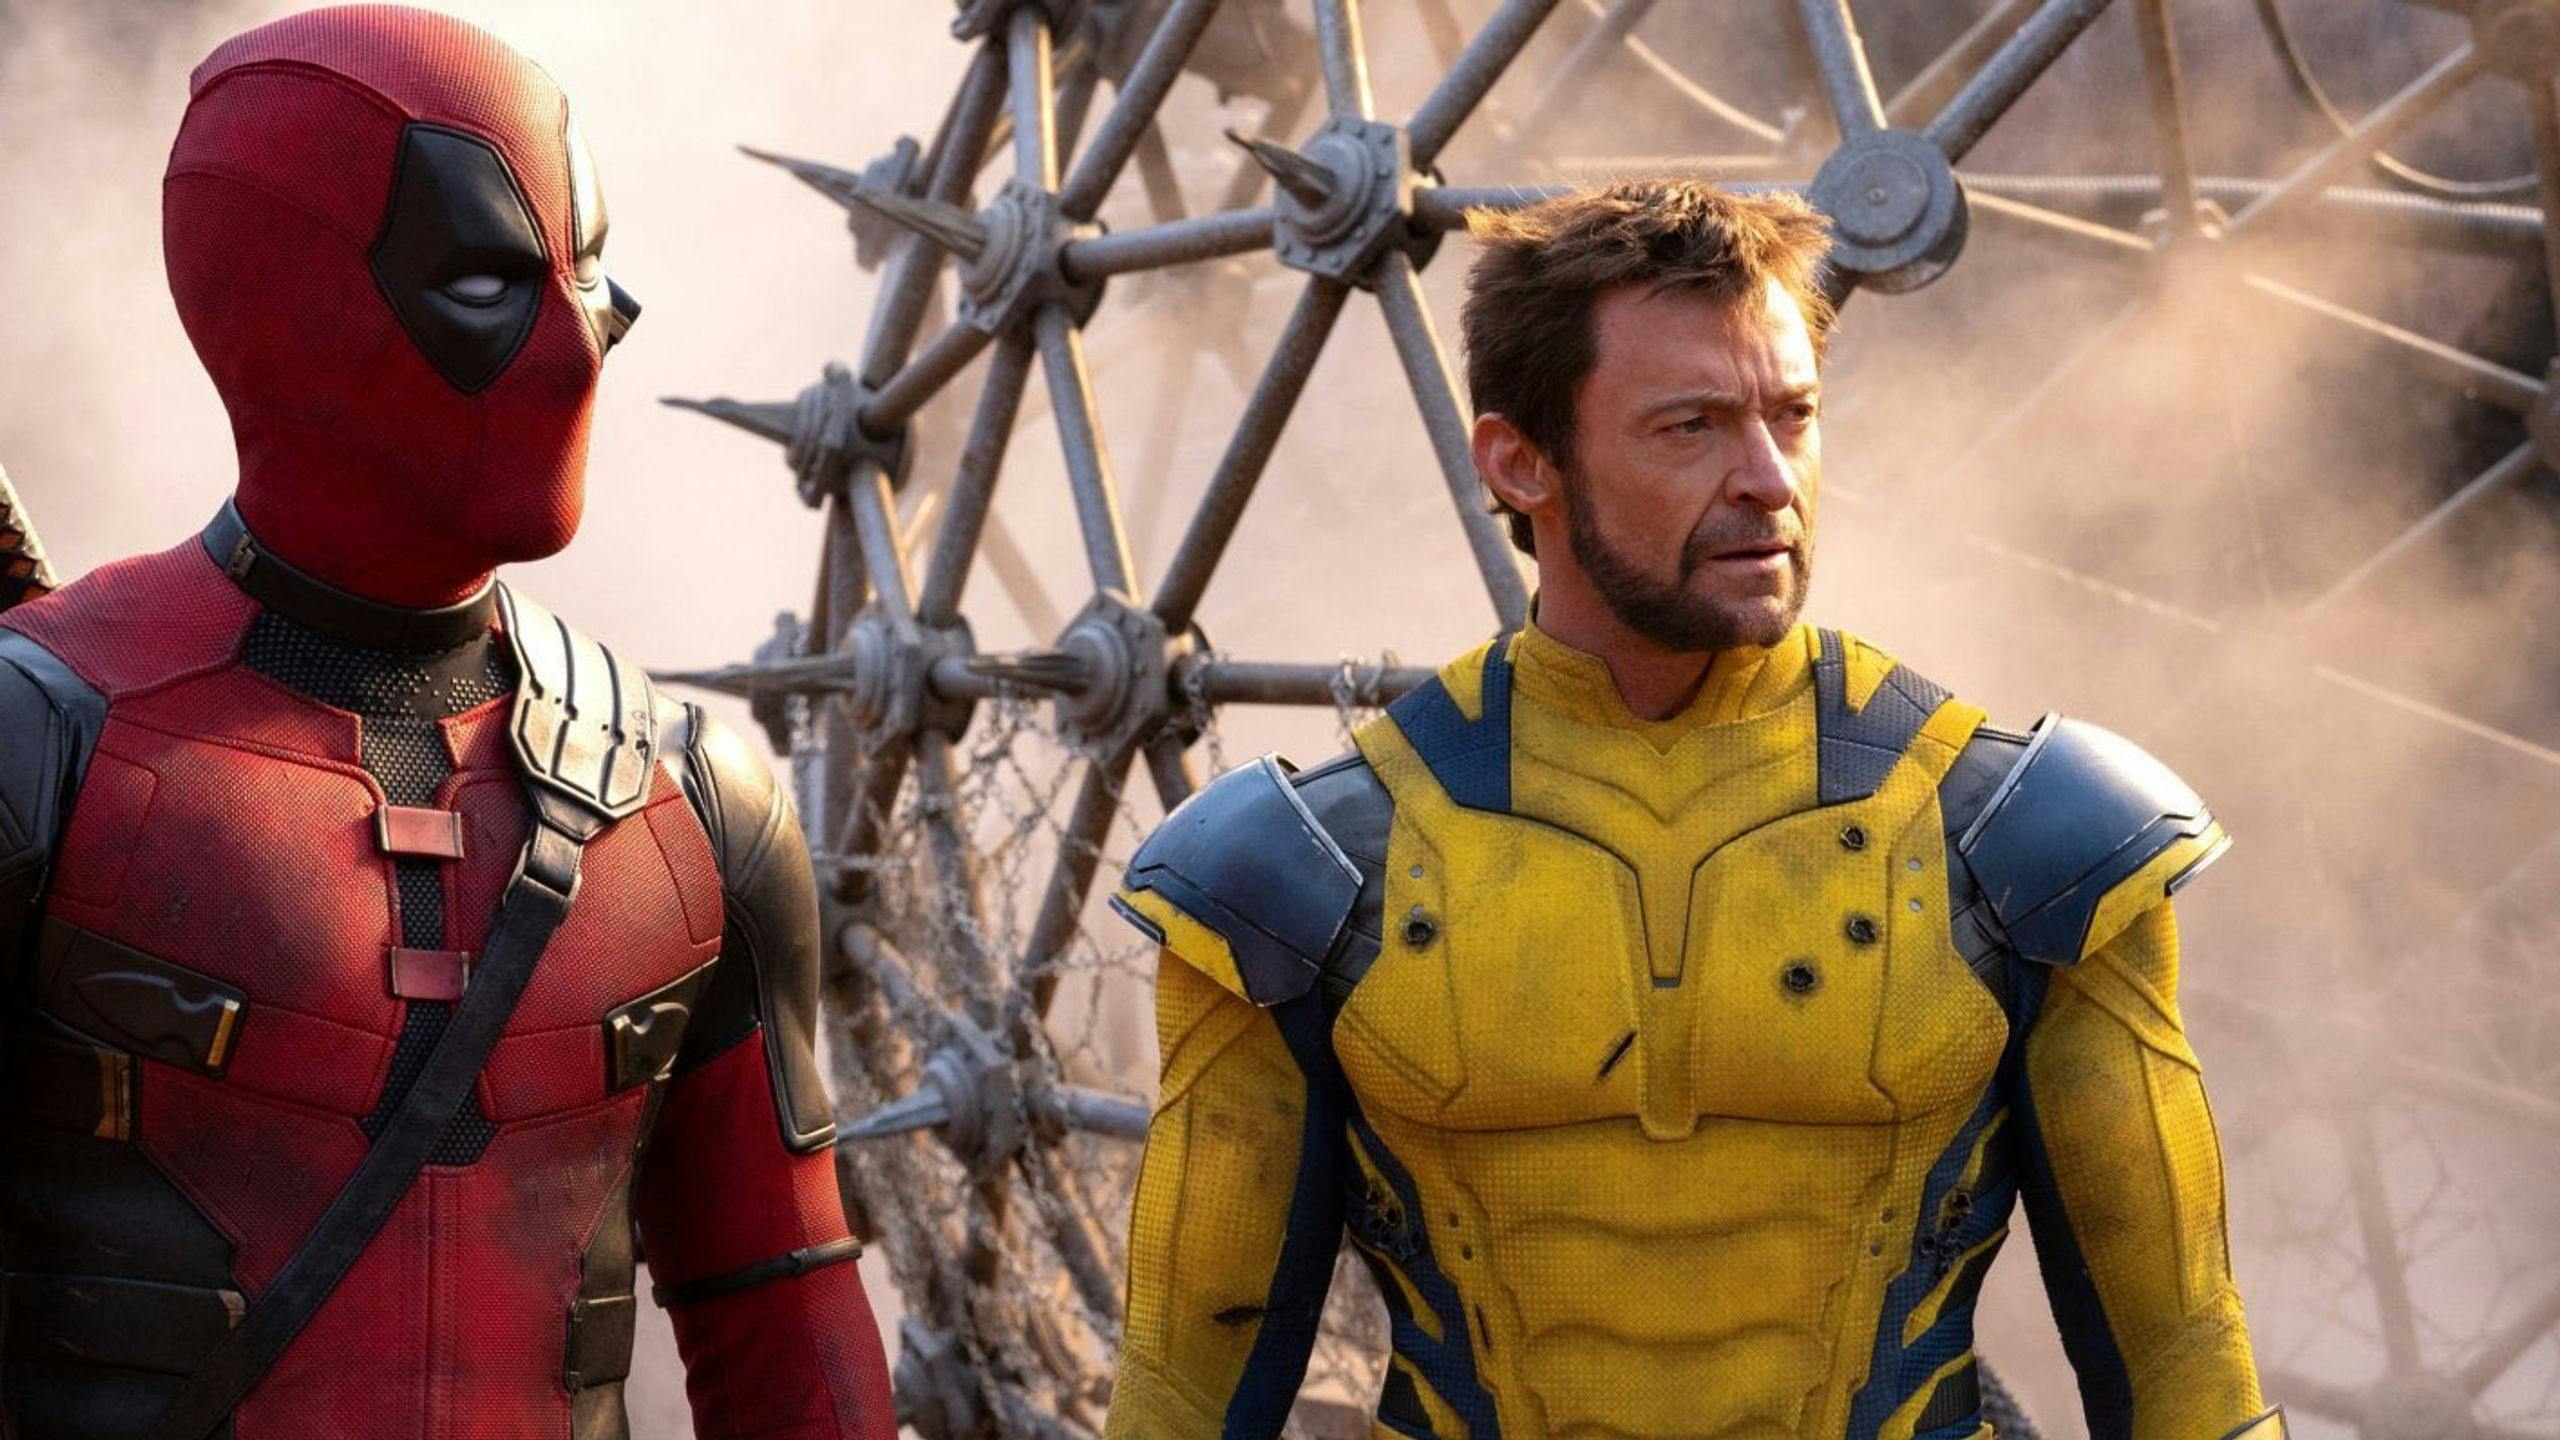 Fotograma promocional de la película 'Deadpool y Lobezno', con Ryan Reynolds y Hugh Jackman